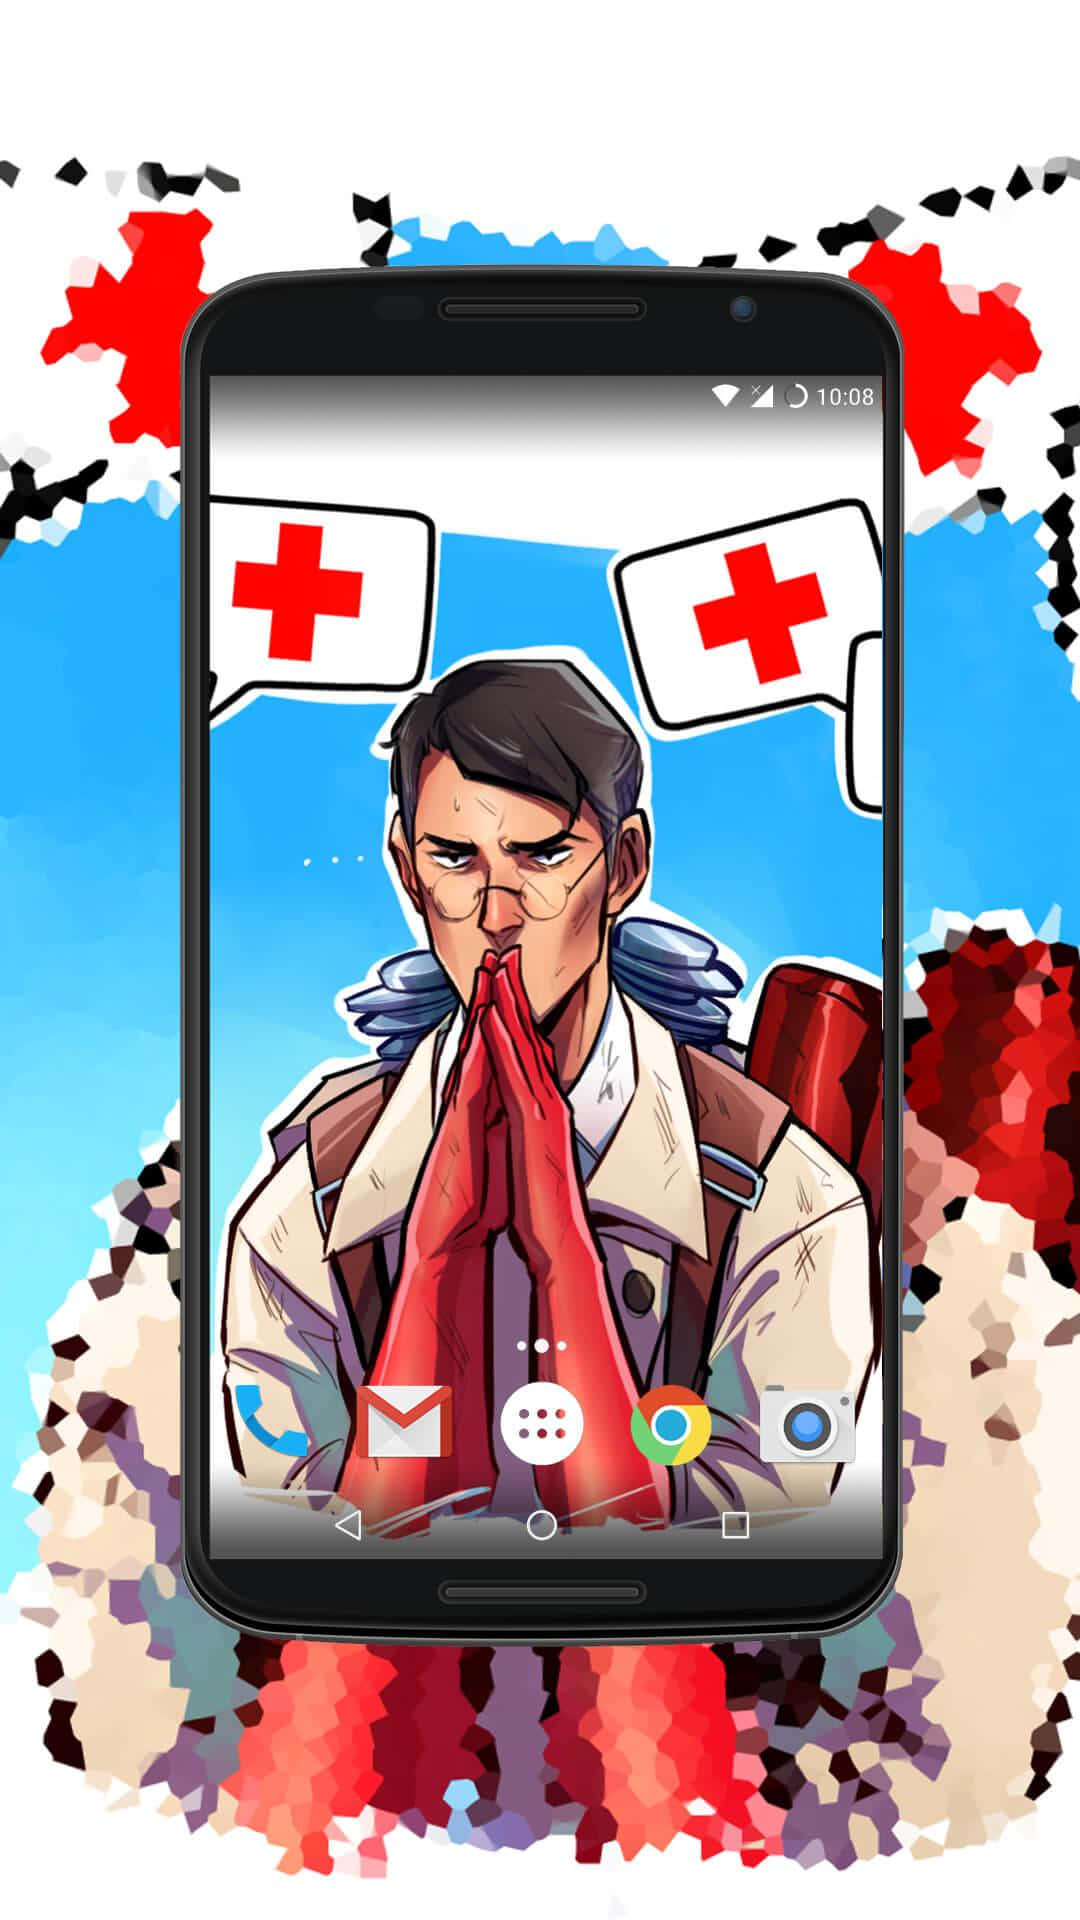 Pixel3xl Team Fortress 2 Hintergrund Ludwig Auf Dem Bildschirm